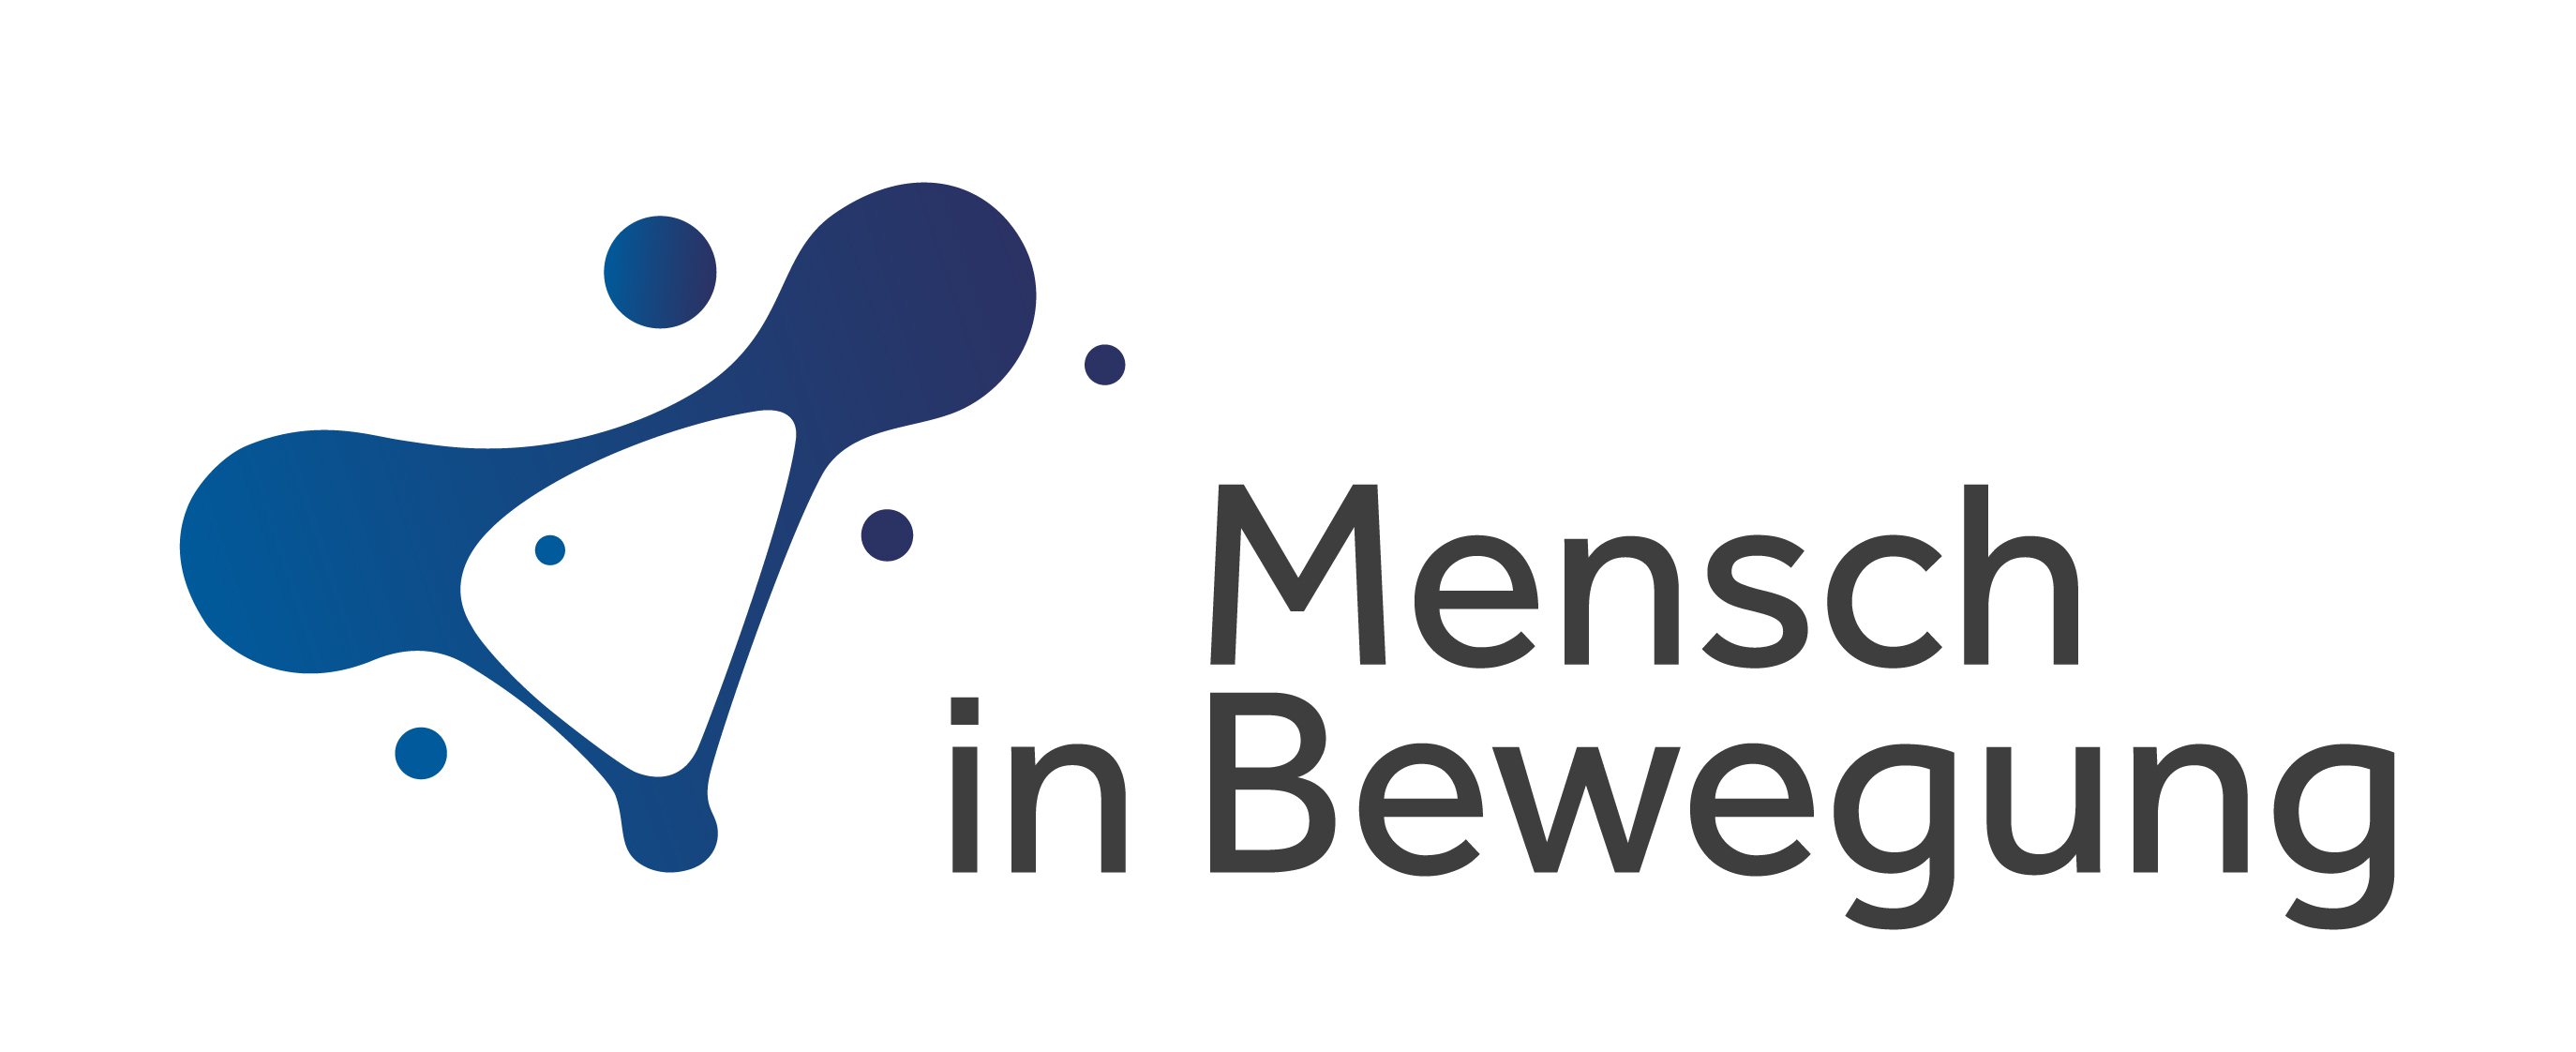 Image of Mensch in Bewegung logo